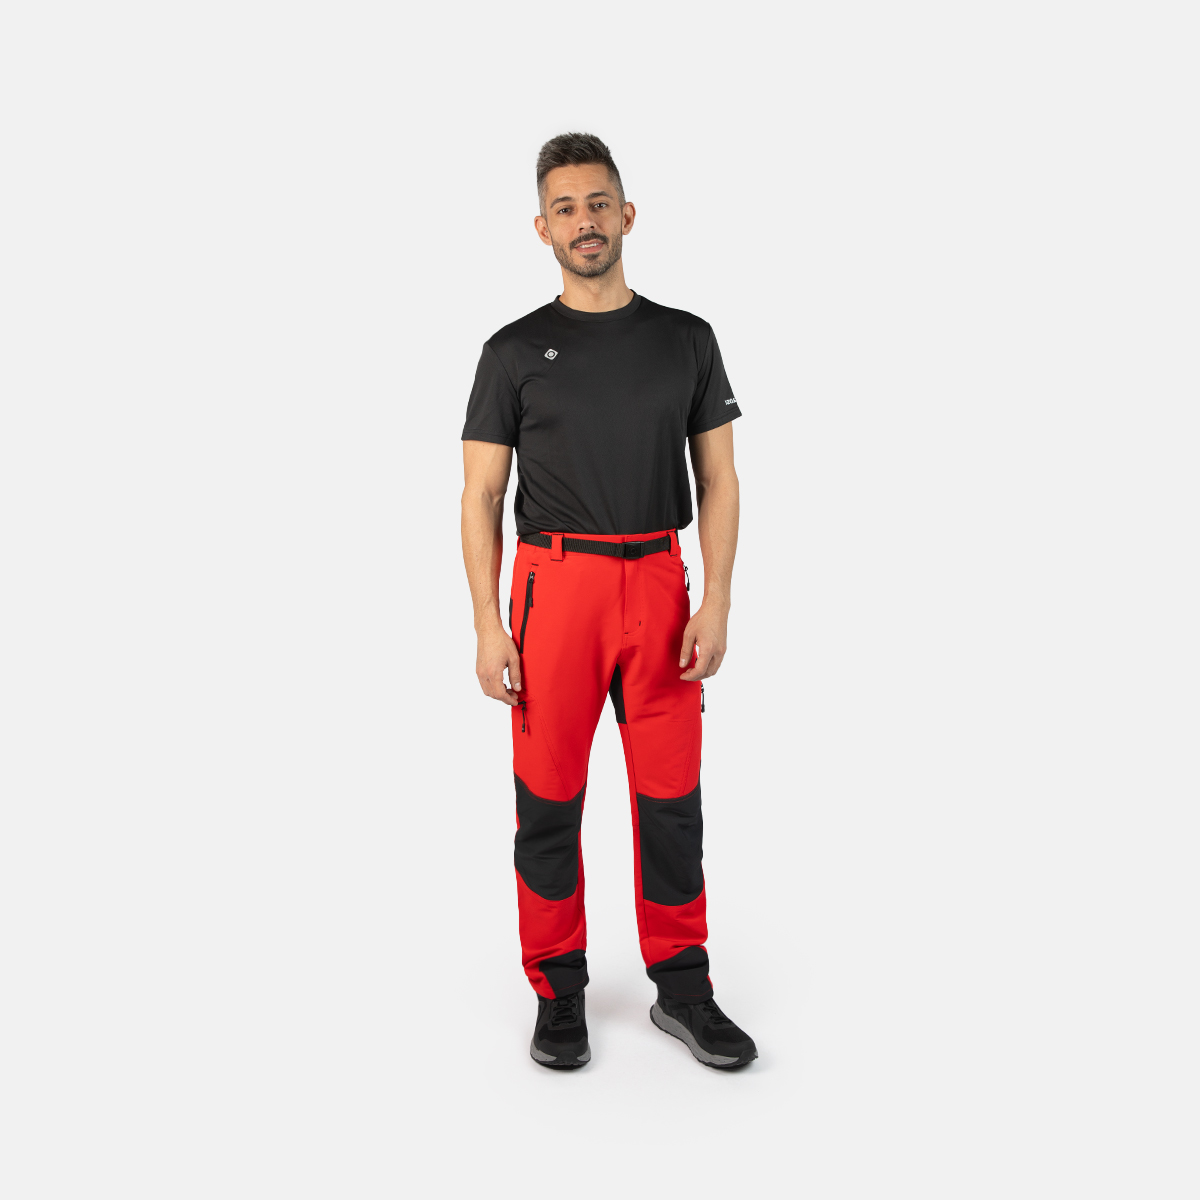 IZAS Izas BALTIC - Pantalón hombre red/black - Private Sport Shop